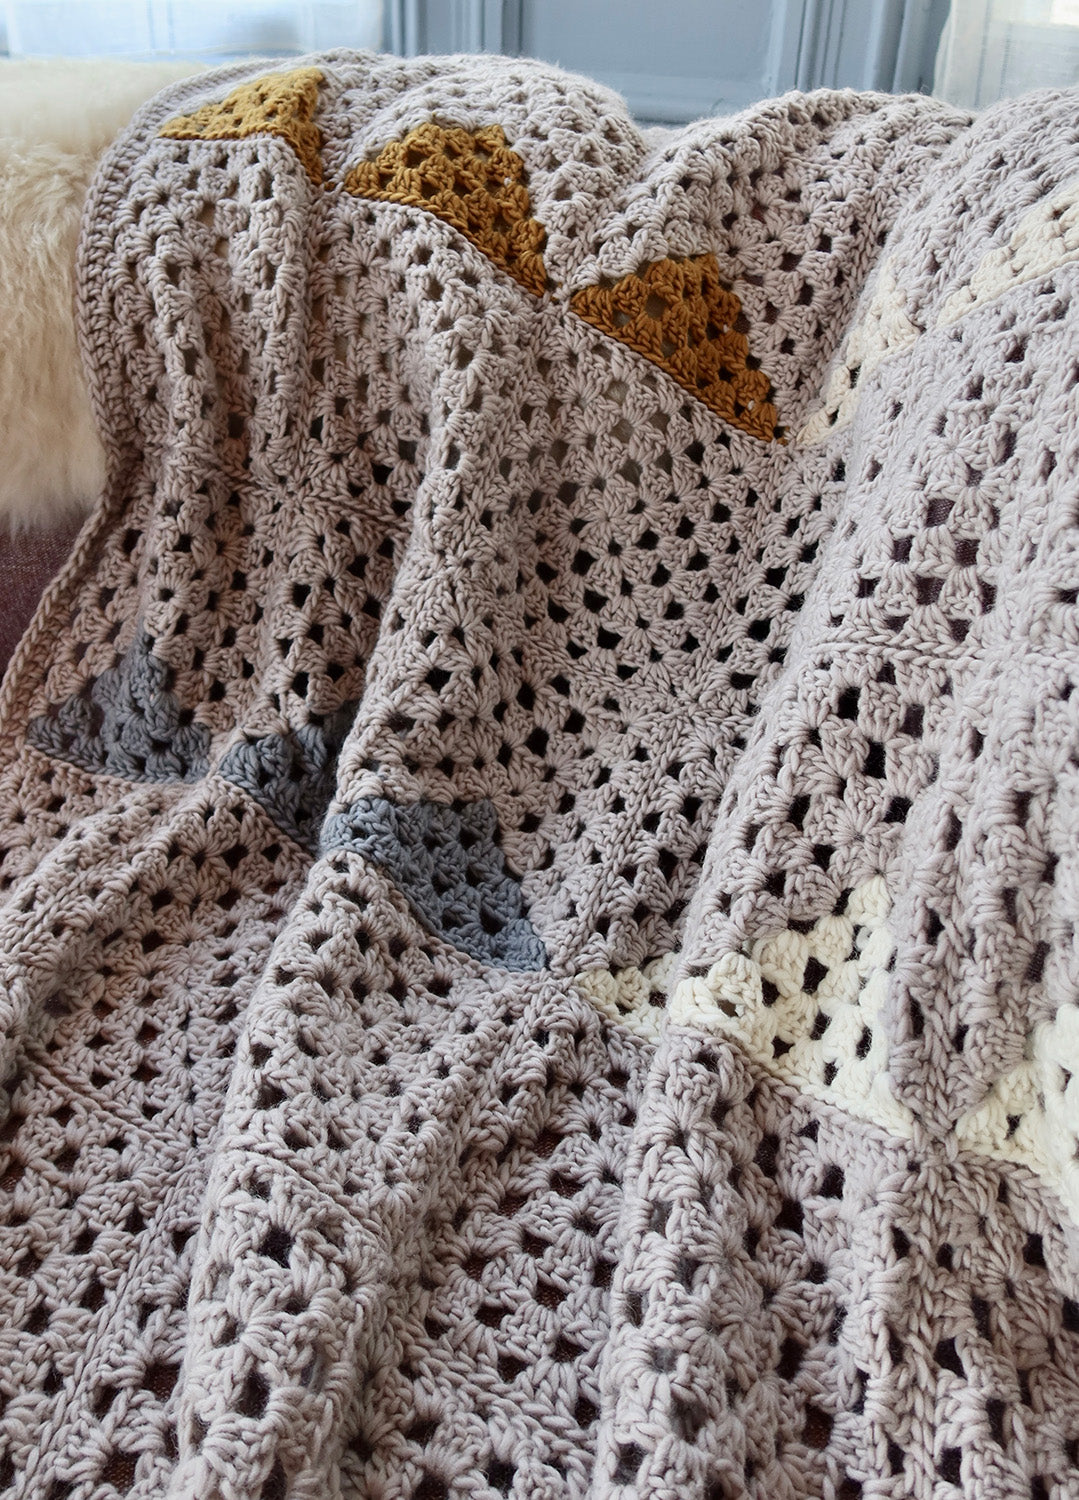 https://www.weareknitters.pl/cdn/shop/files/crochet-kit-petite-wool-landen_granny-square-blanket_en_02.jpg?v=1703103659&width=1500